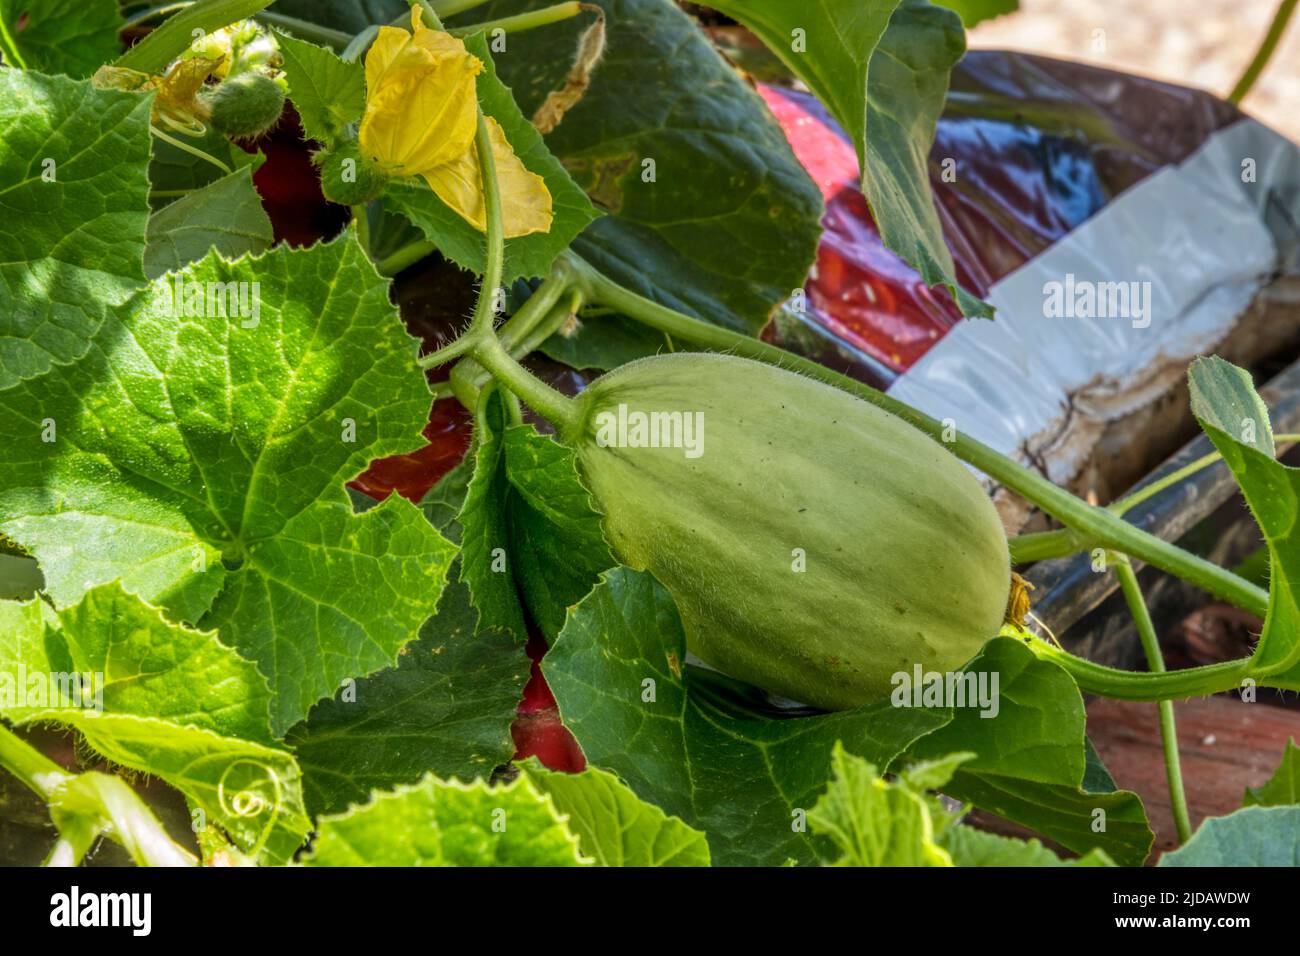 Un joven emir F1 melón, Cucumis melo, creciendo en una bolsa de cultivo en un invernadero. Foto de stock